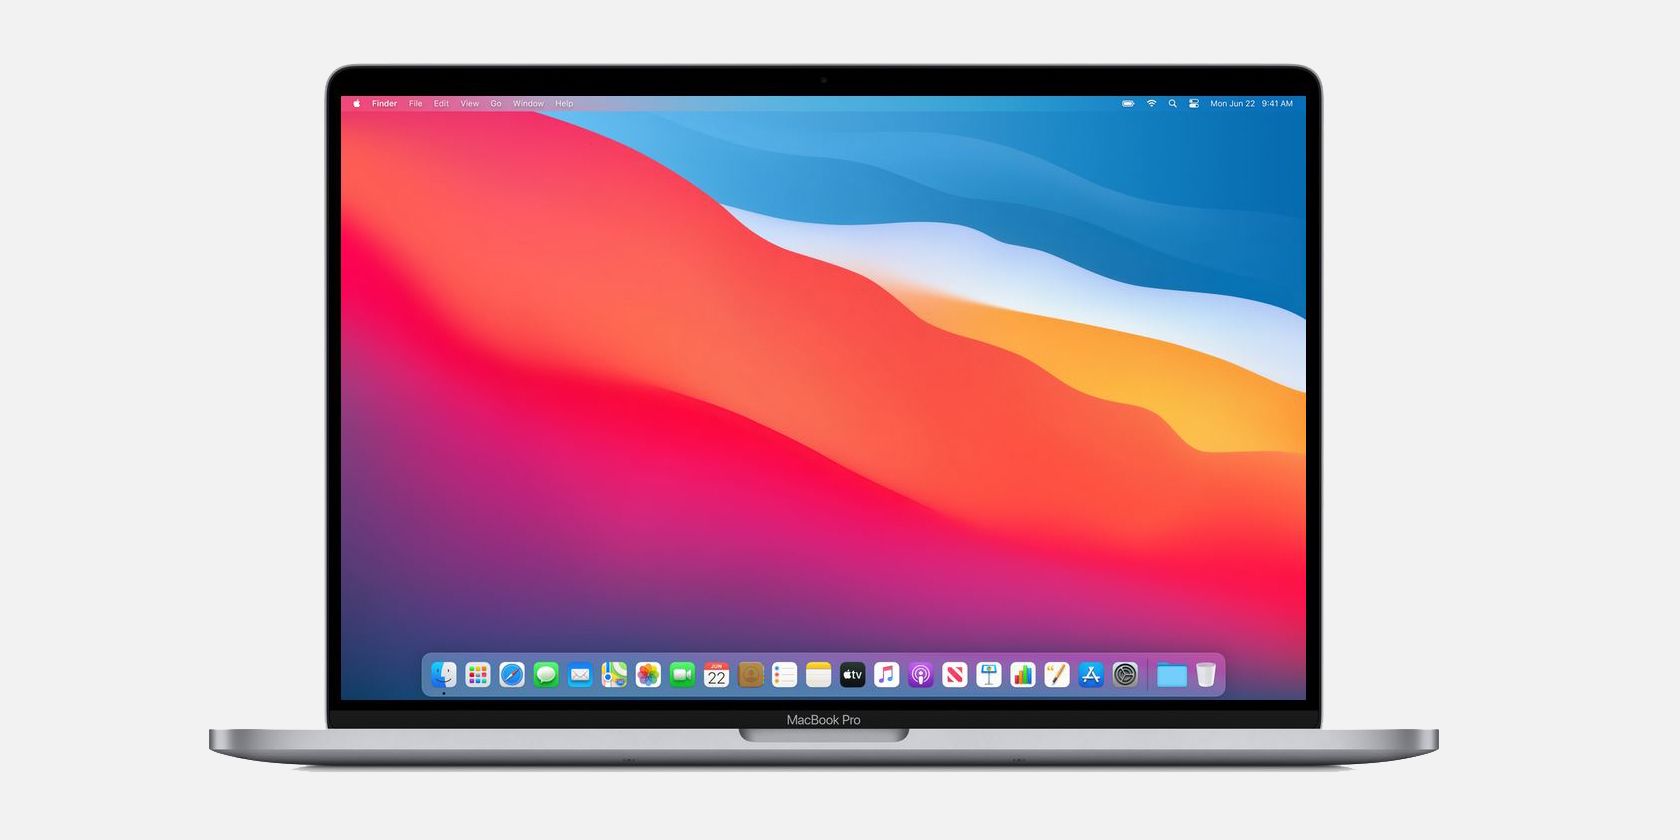 macOS Big Sur displayed on a MacBook